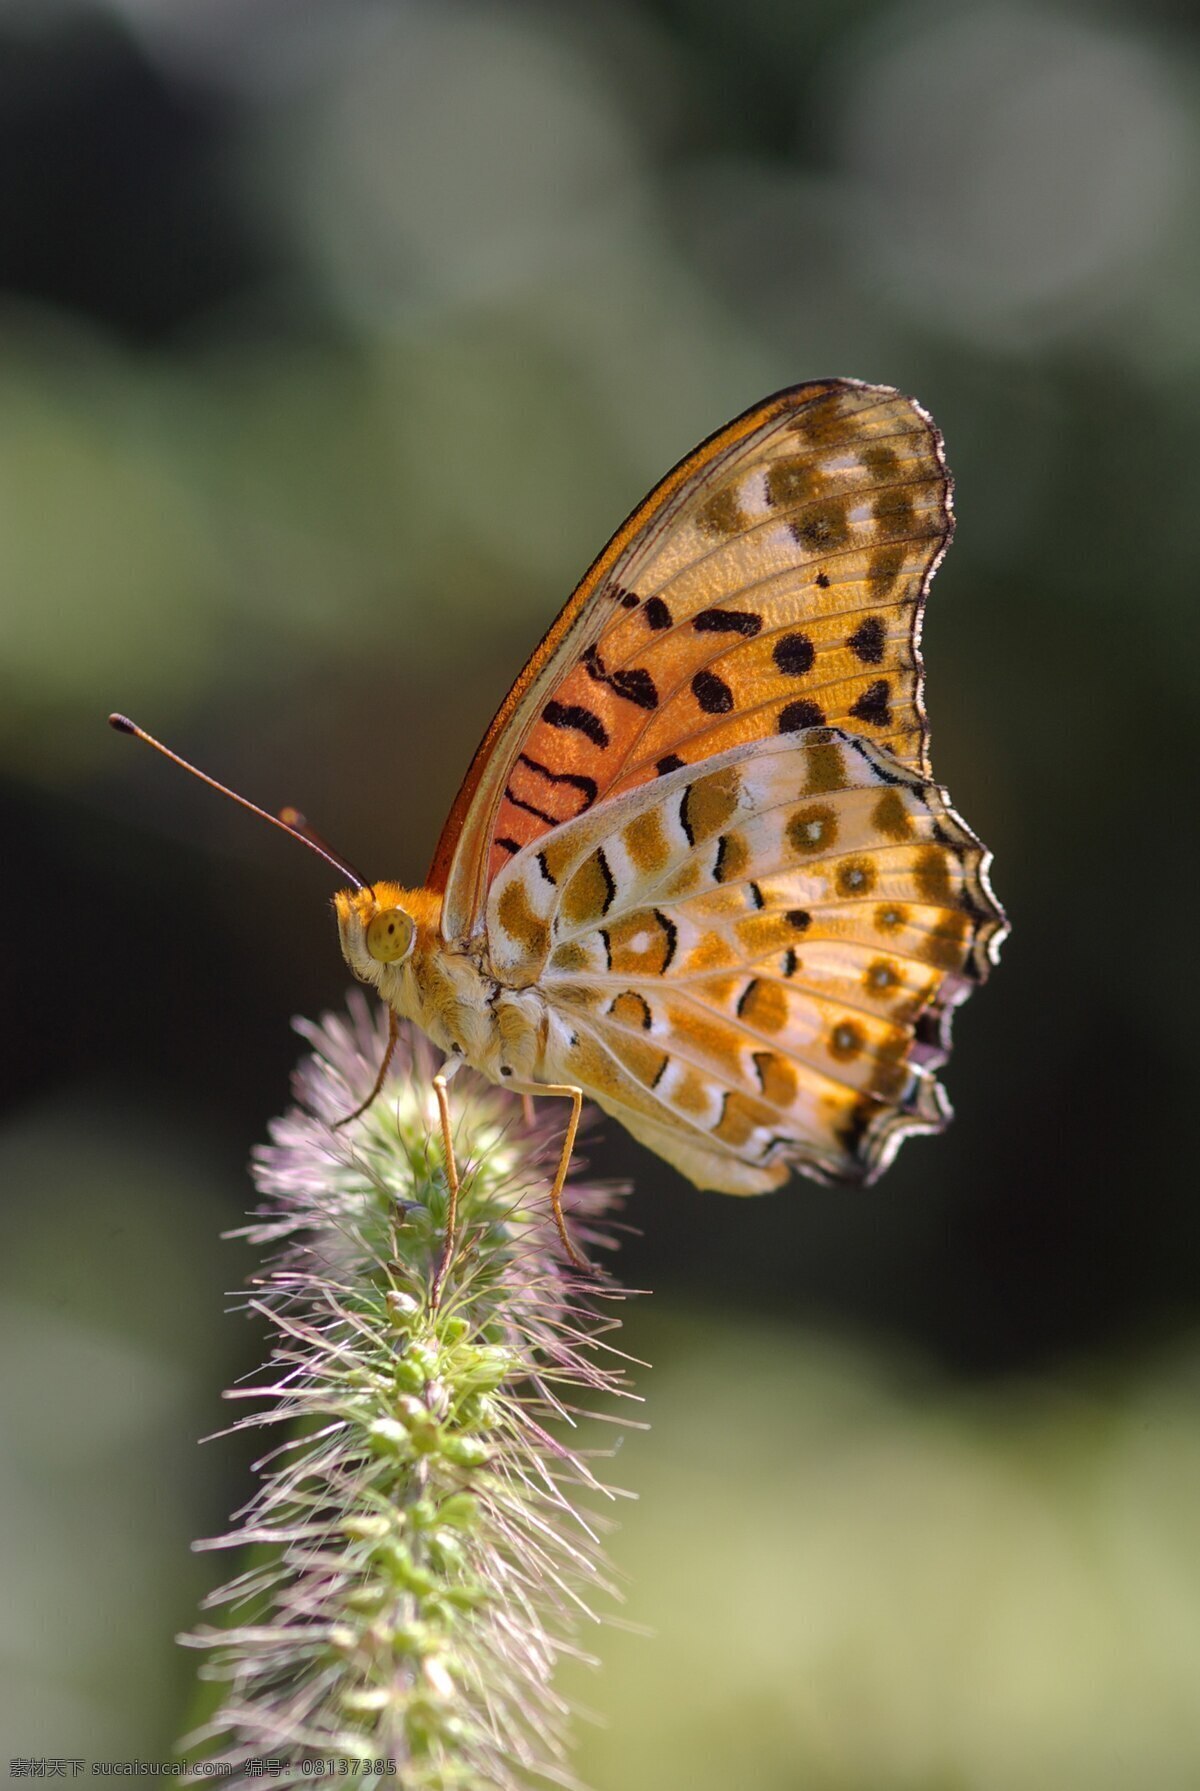 蝴蝶 翅膀 动物 动物世界 飞行 风景 昆虫 绿色 生物世界 唯美 摄影图库 psd源文件